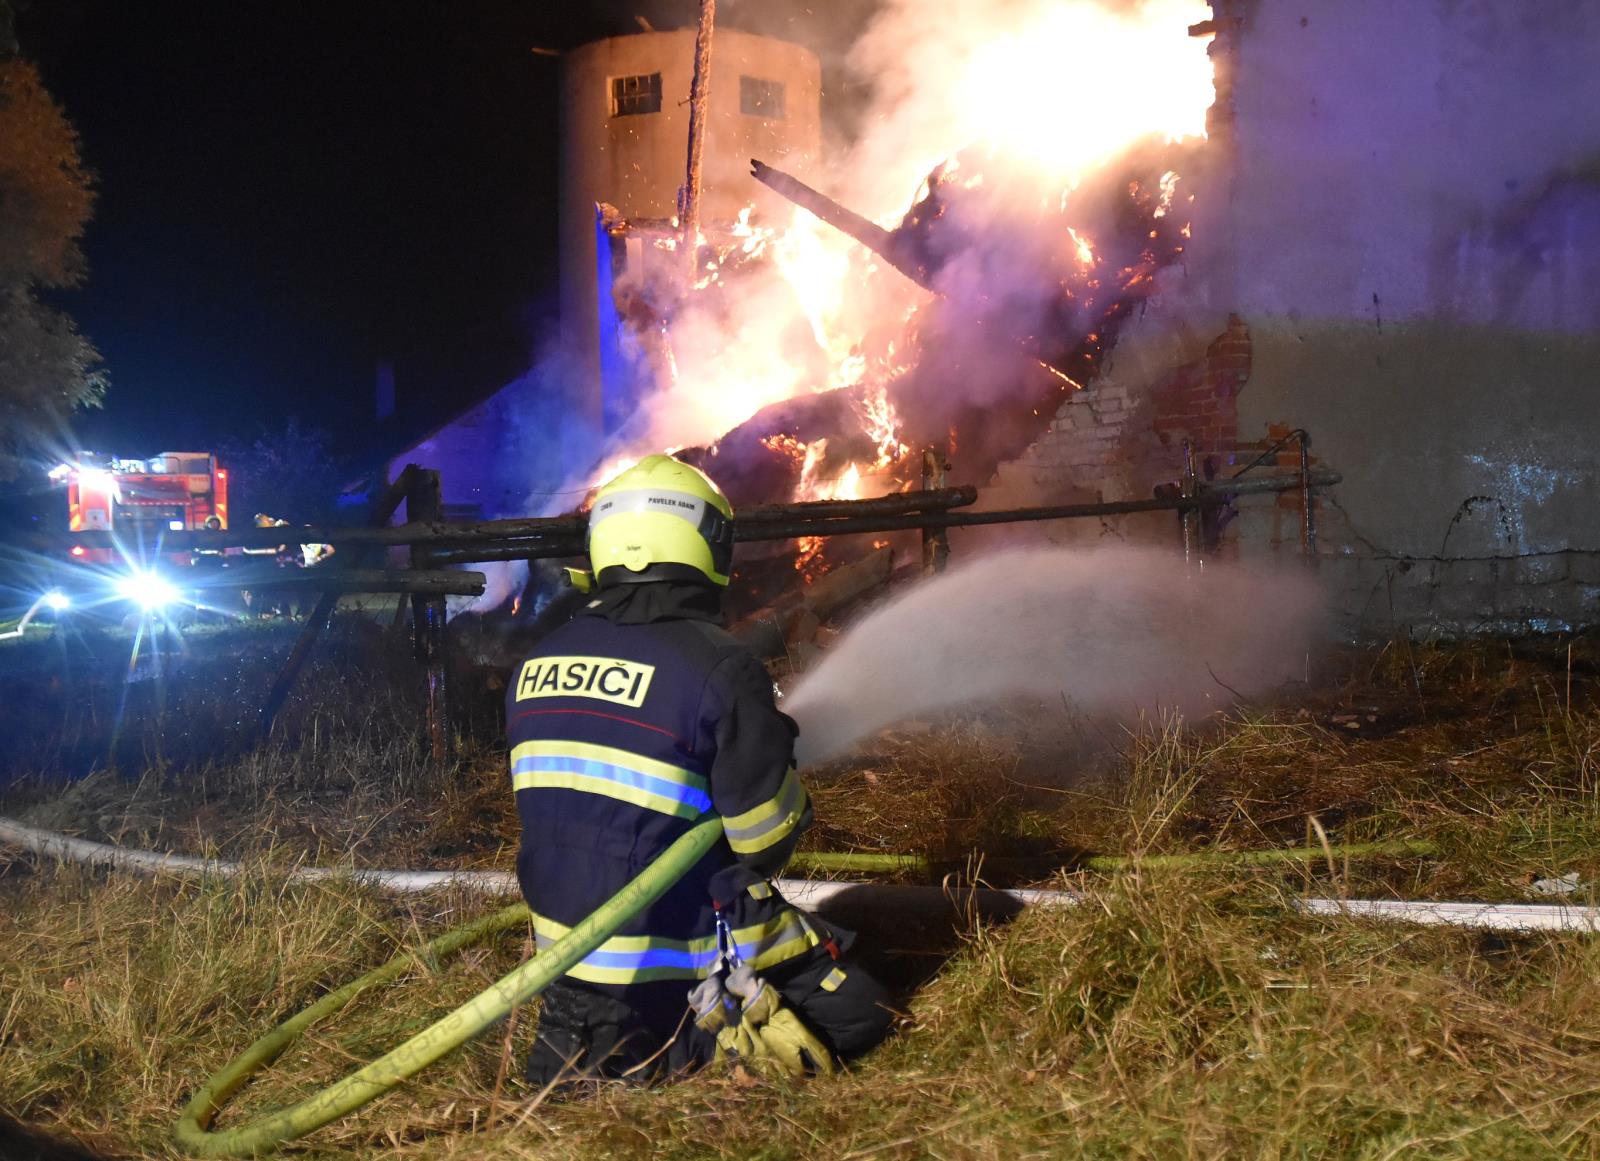 KVK_Požár seníku v Loužku na Chebsku-pohled na zasahujícího hasiče a hořící objekt.jpg